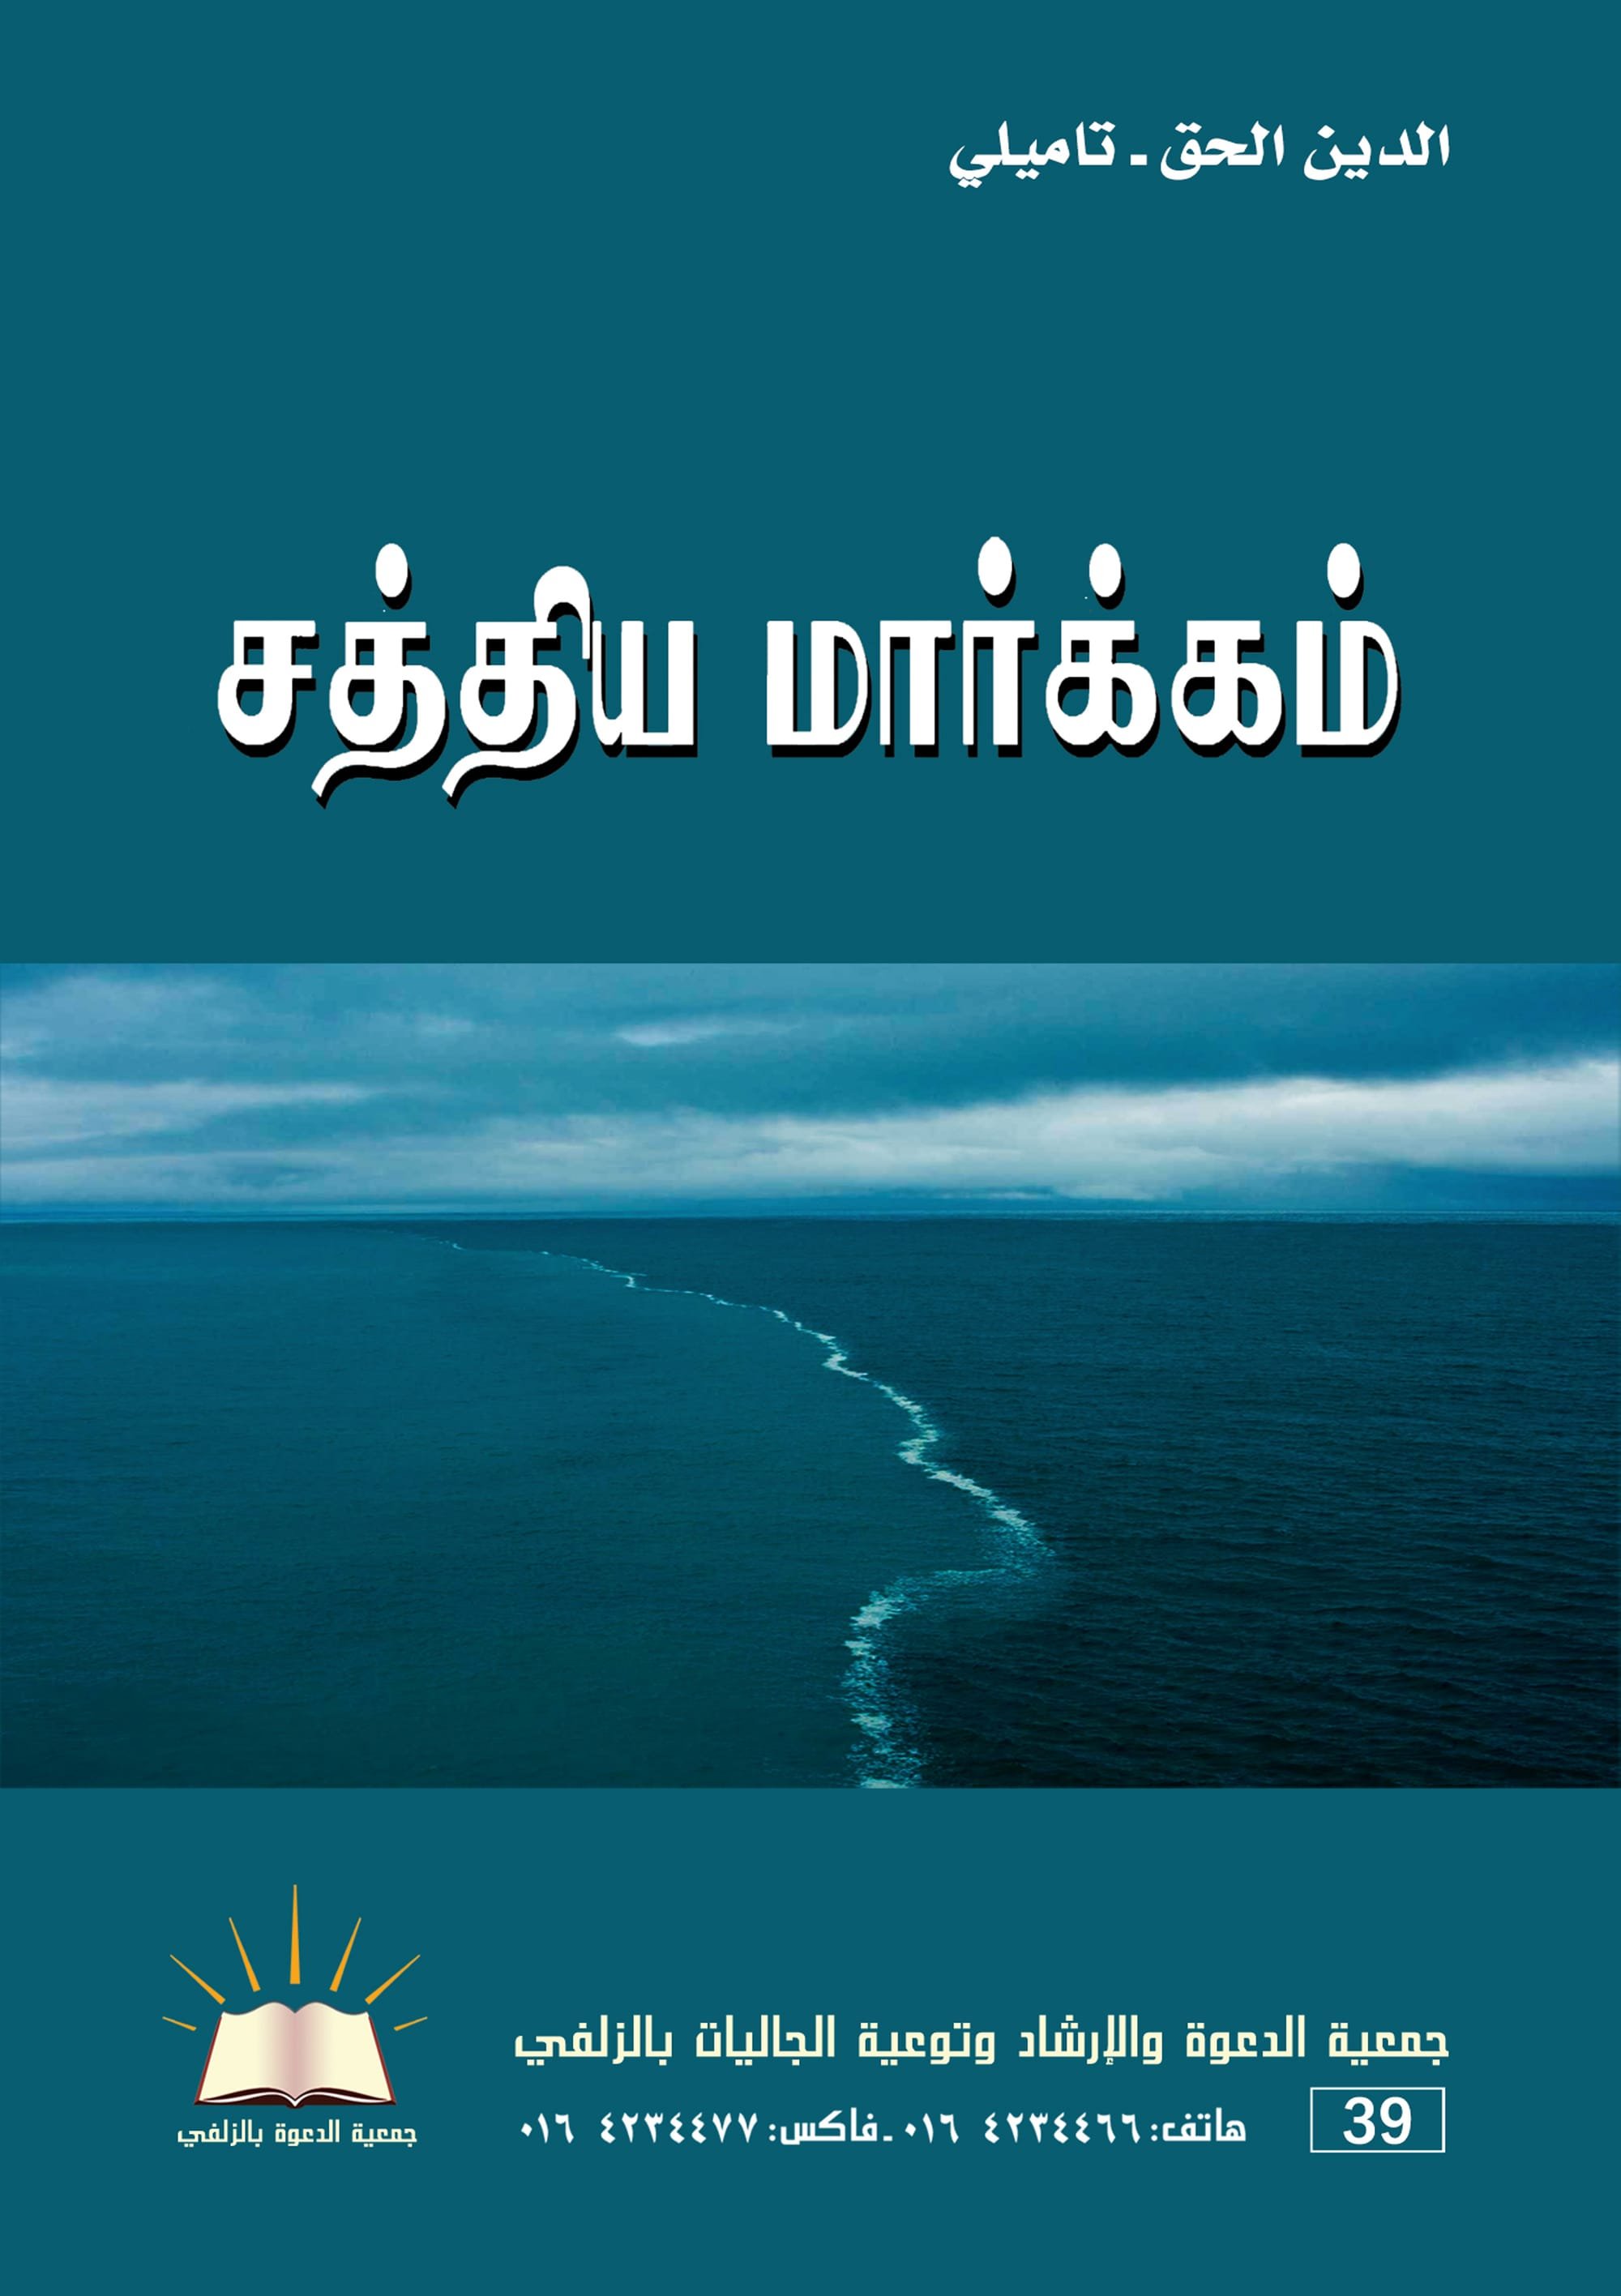 الدين الحق - تاميلي